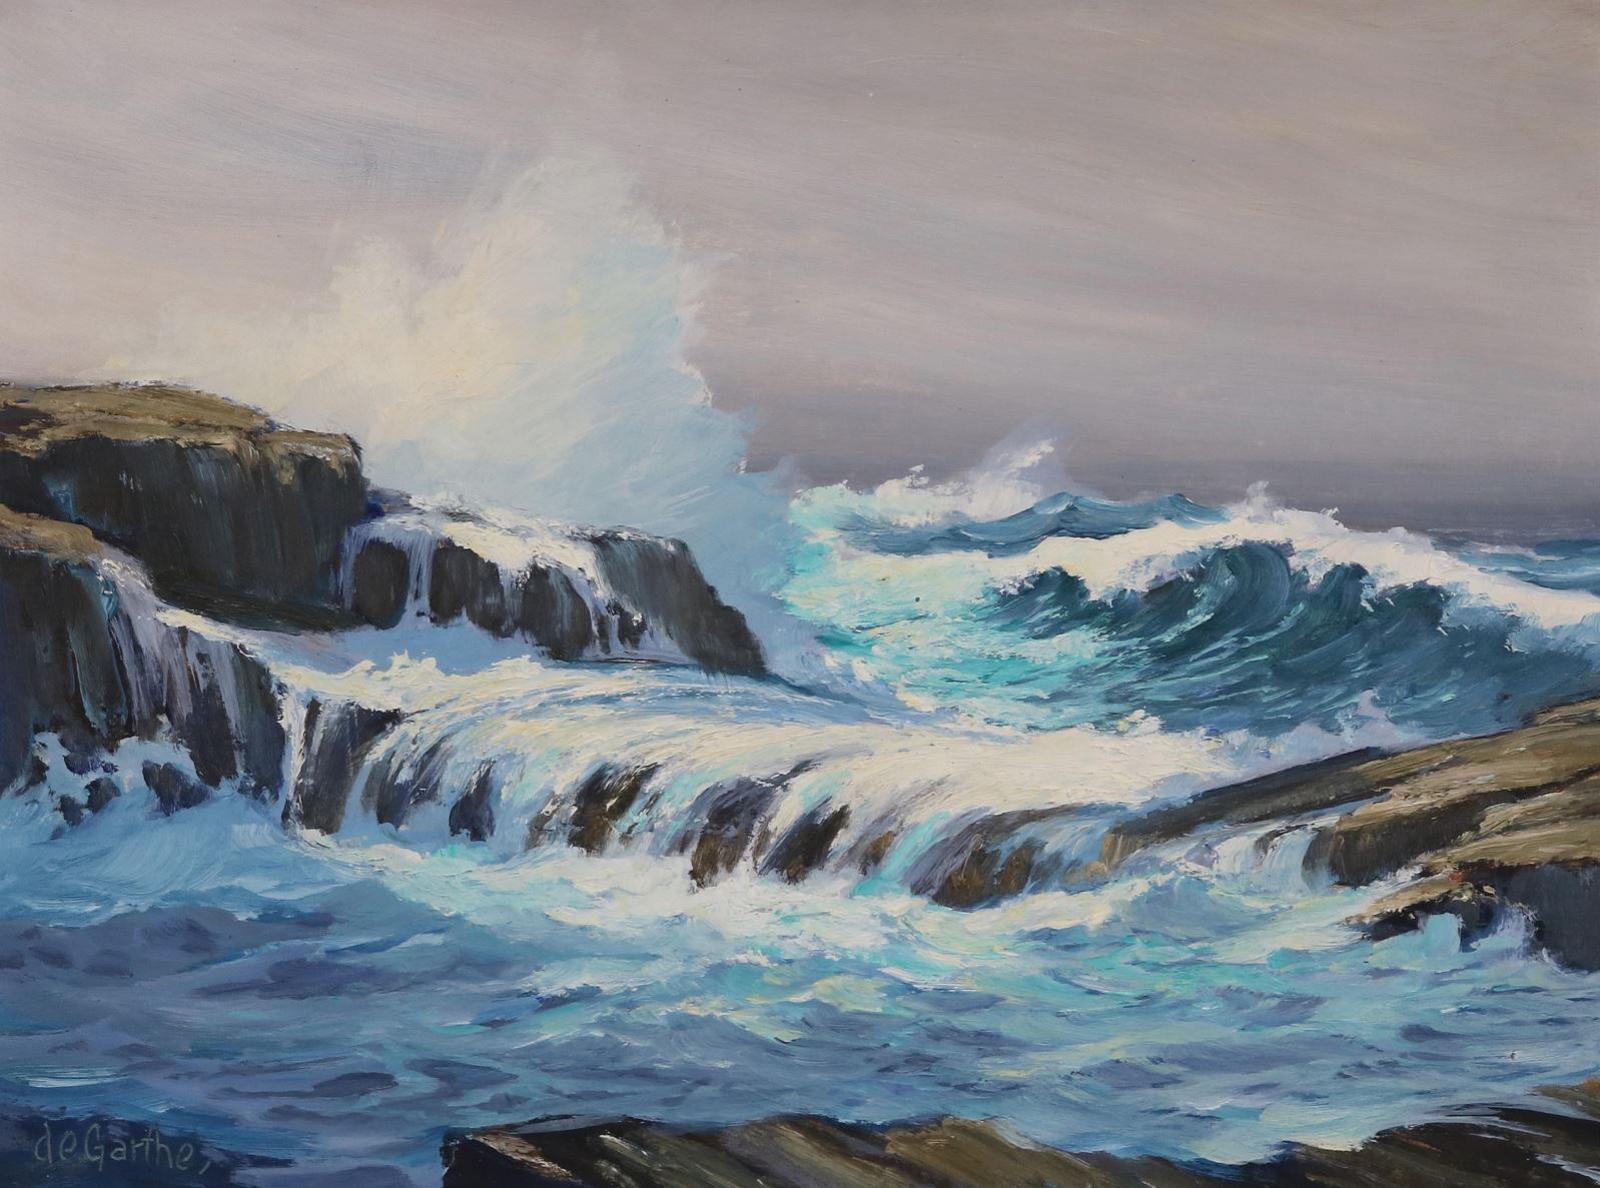 William Edward de Garthe (1907-1983) - Rocks And Crashing Waves, Peggys Cove